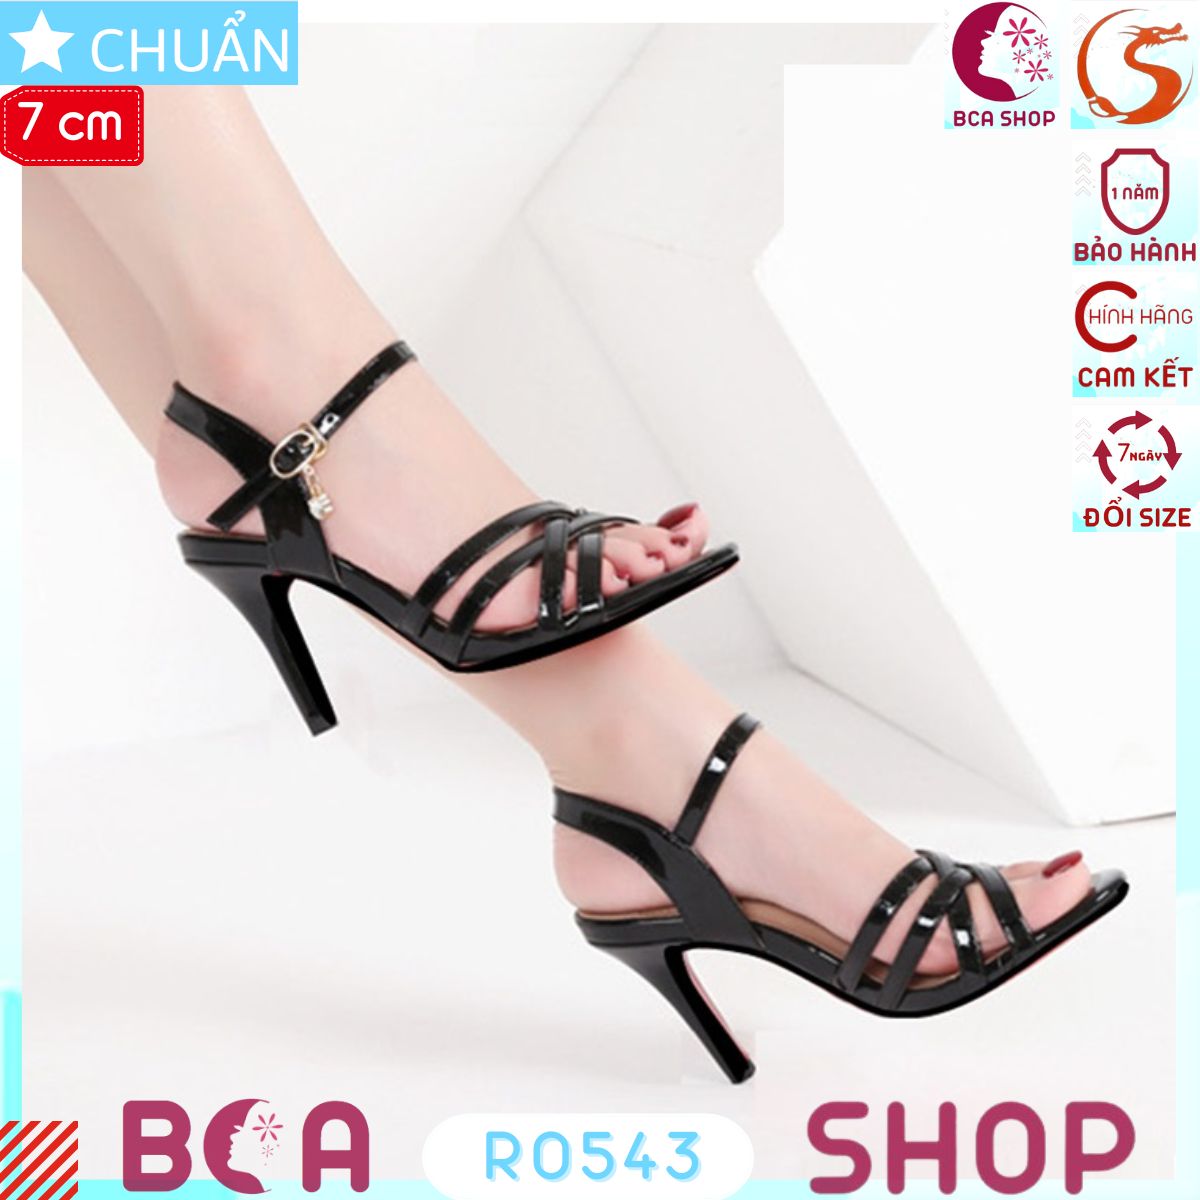 Giày cao gót nữ màu đen 7p RO543 ROSATA tại BCASHOP gót nhọn, hở mũi, kiểu dáng sandal tôn dáng và thời trang